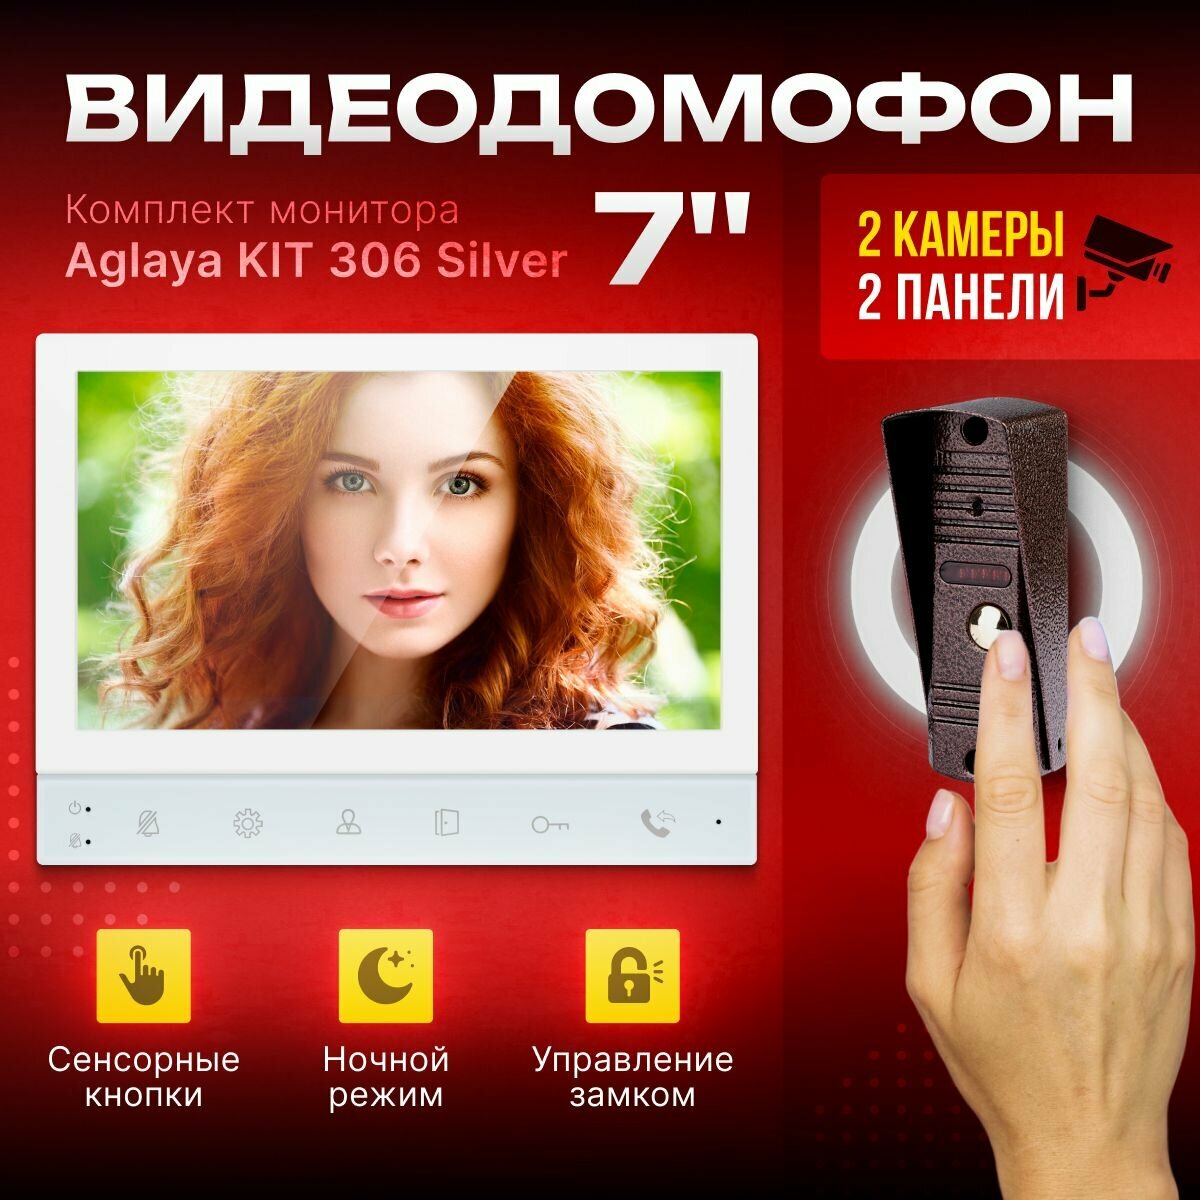 Комплект видеодомофона Aglaya-KIT (306br), белый. Экран 7". Совместим с подъездным домофоном через МС.